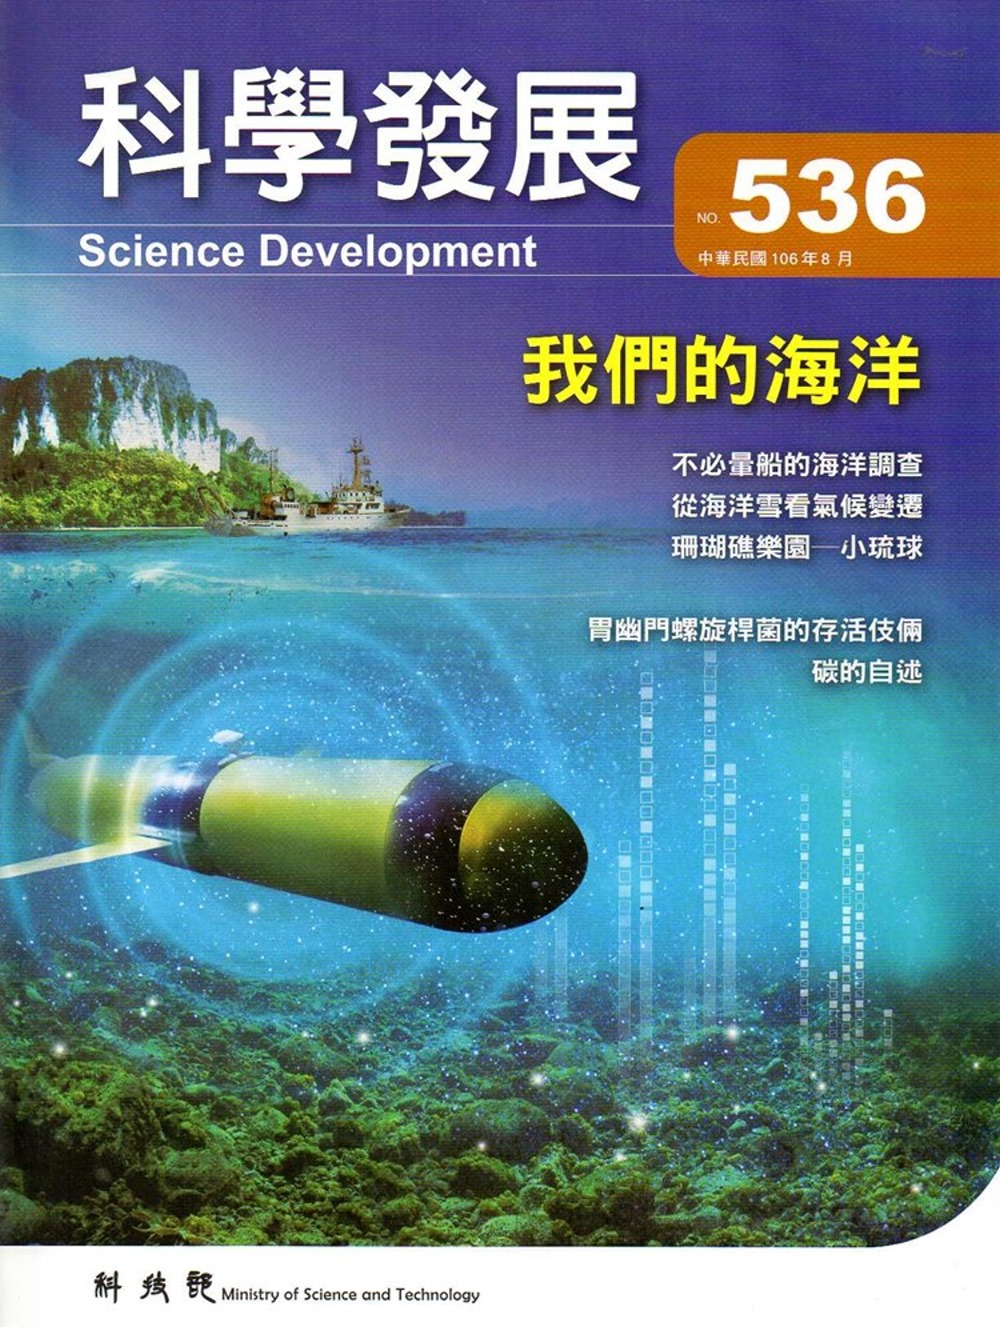 科學發展月刊第536期(106/08)